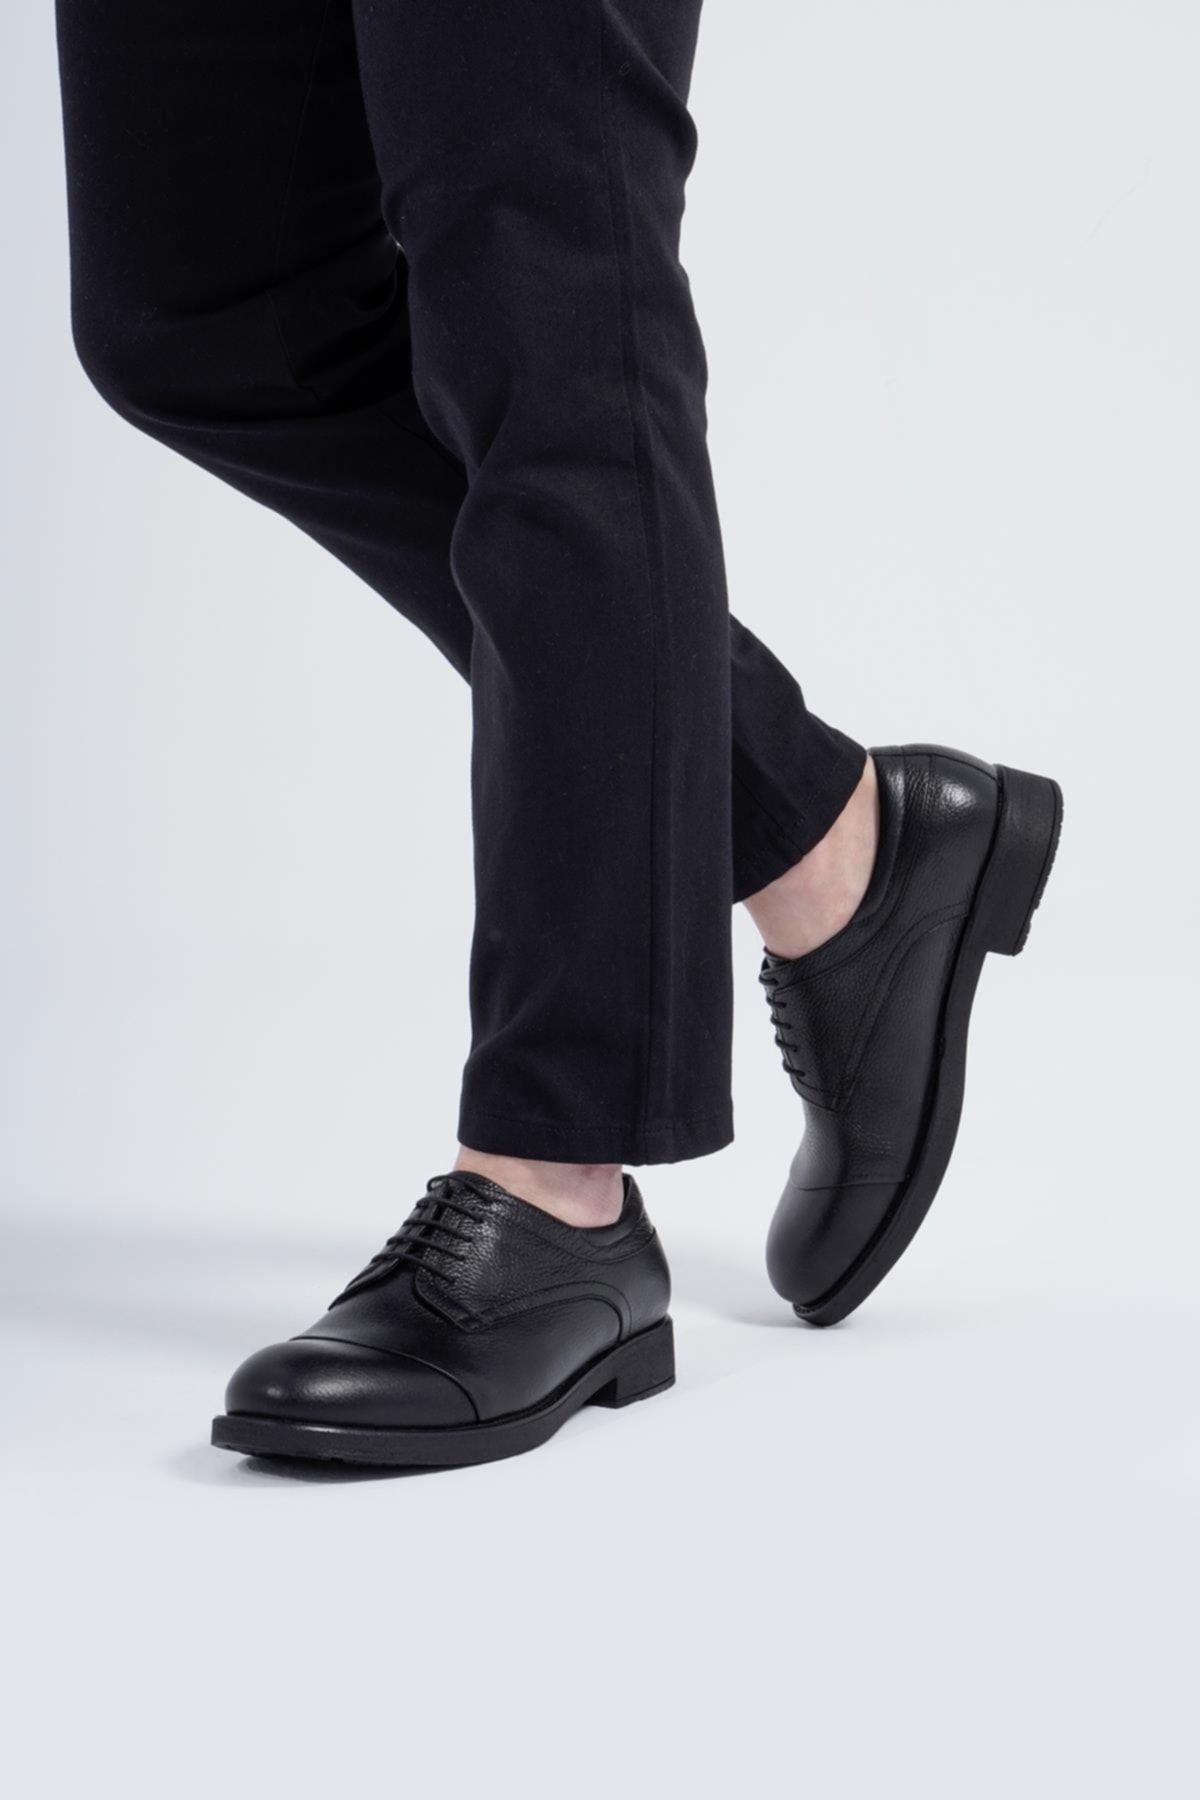 CZ London Hakiki Deri Erkek Klasik Ayakkabı Rahat Taban Bağcıklı